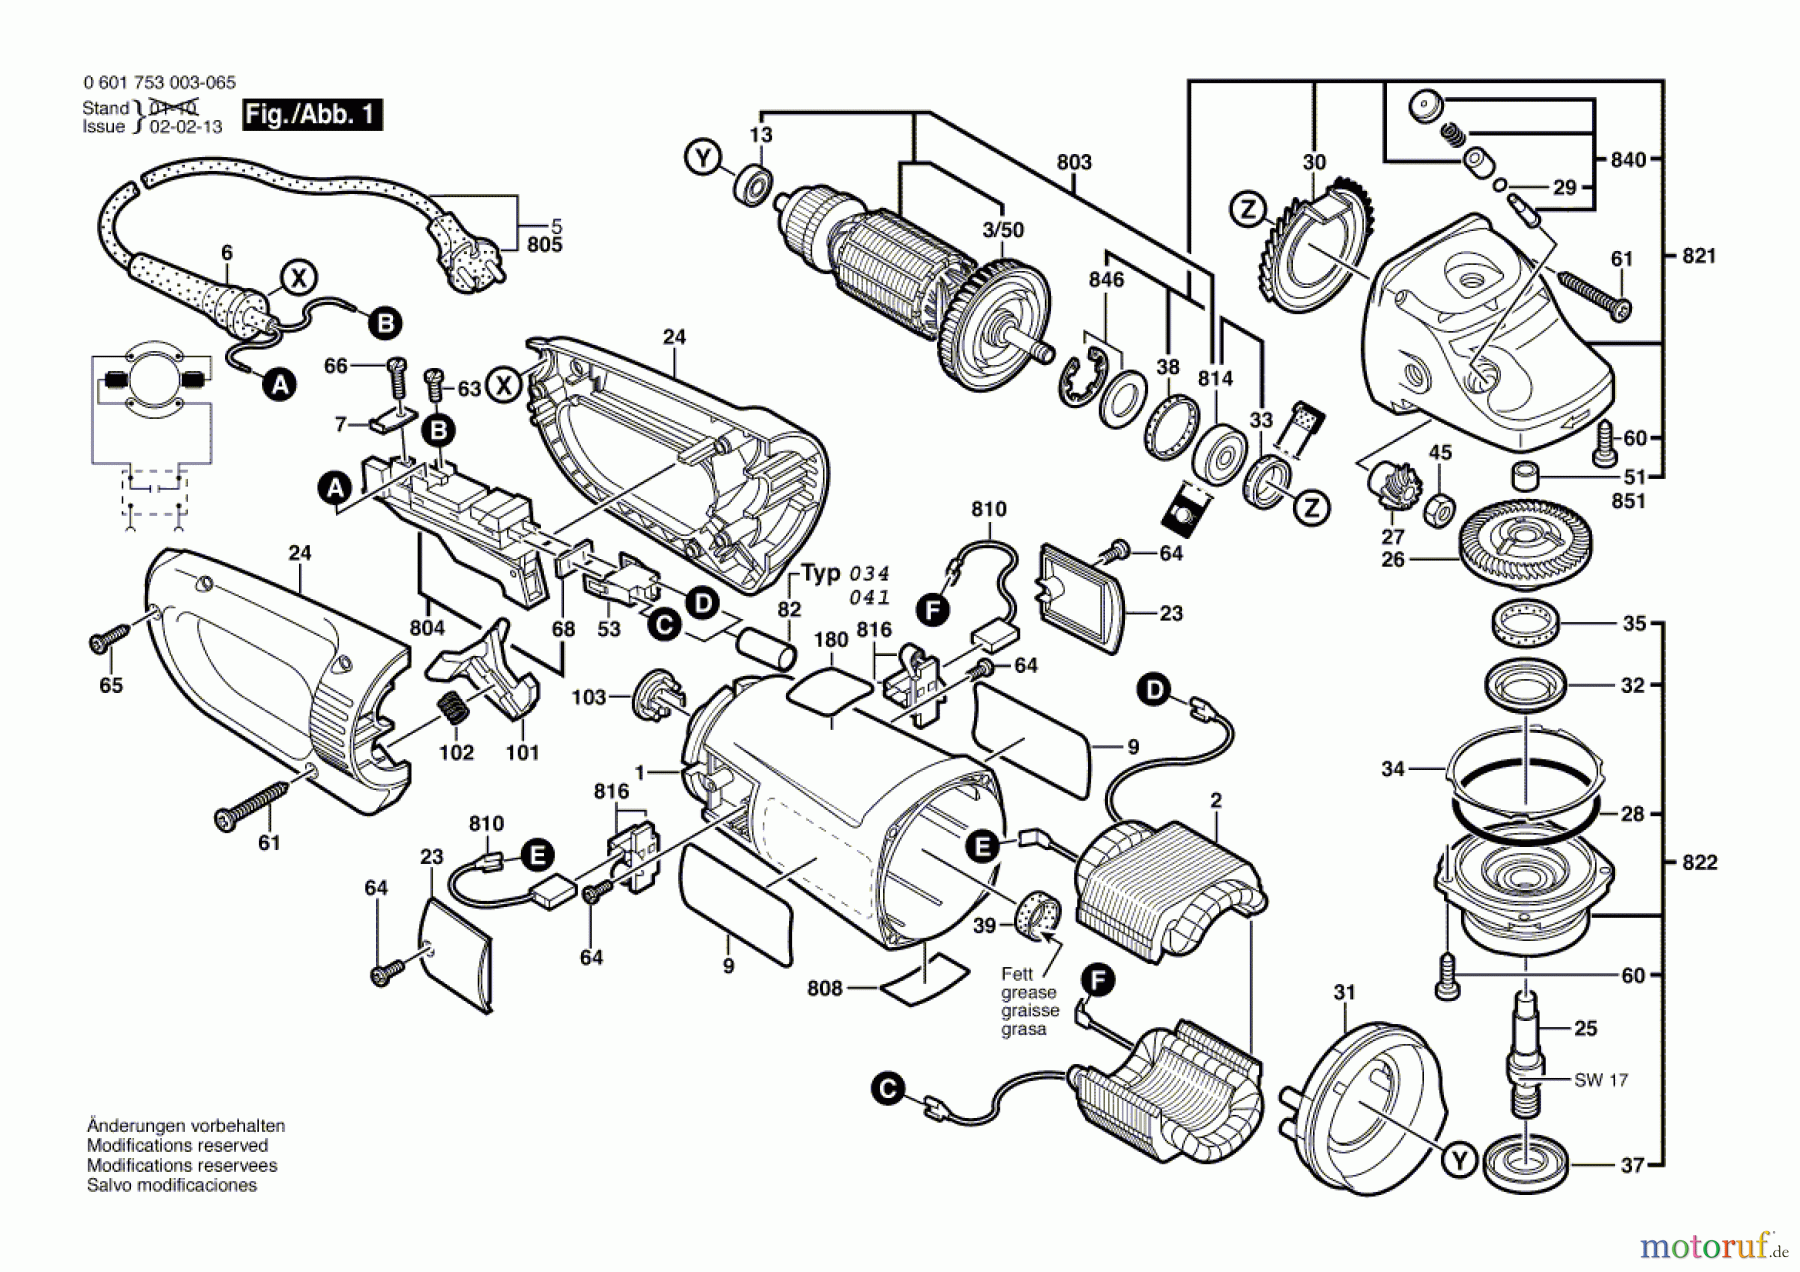  Bosch Werkzeug Winkelschleifer GWS 23-180 Seite 1